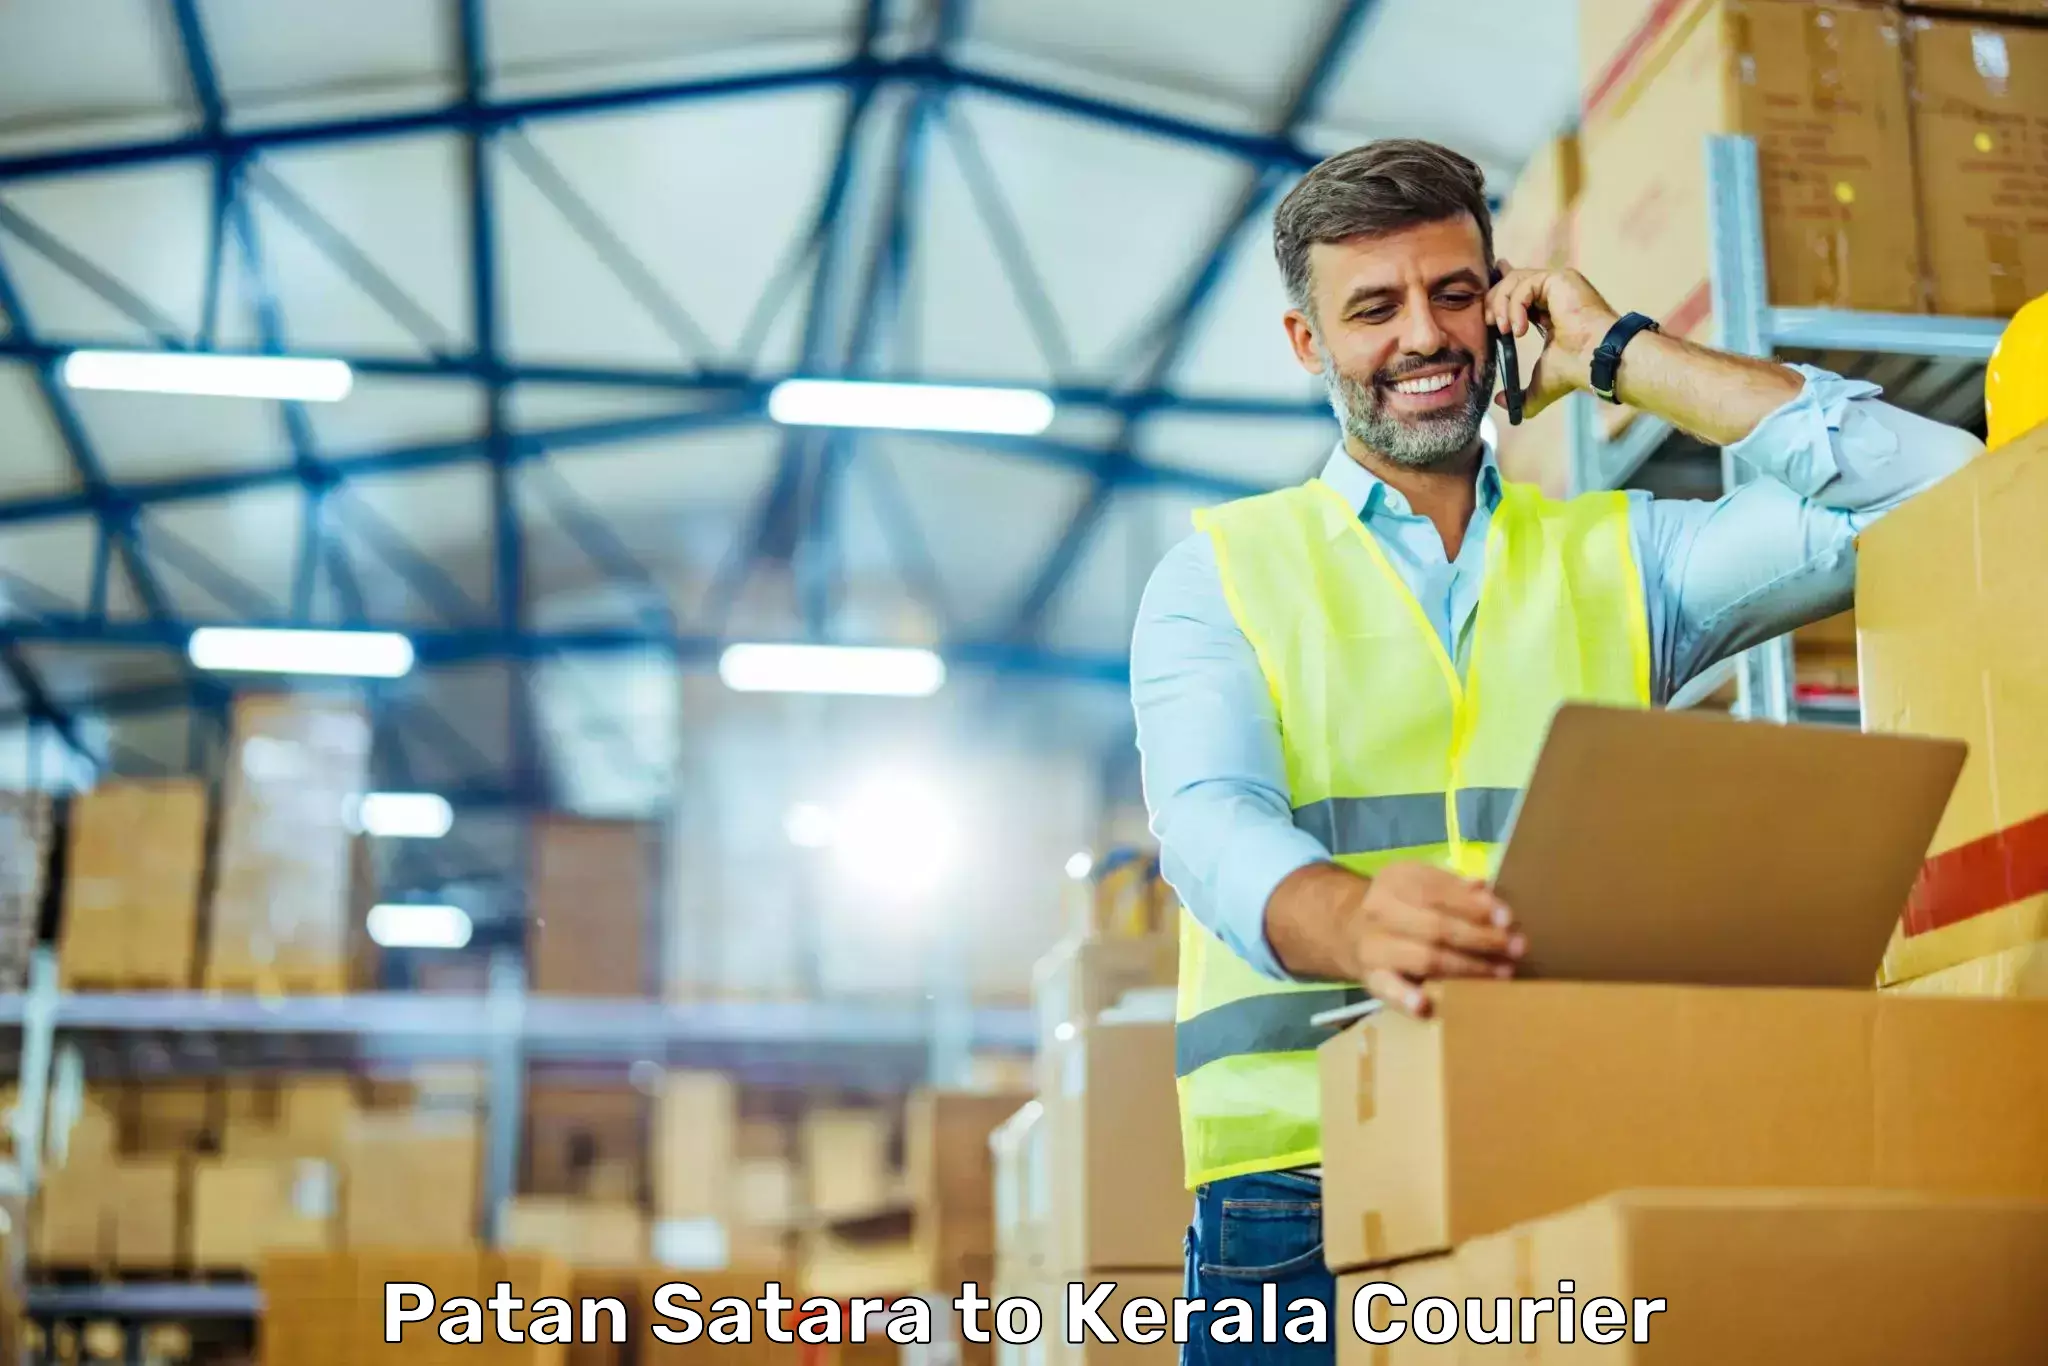 Personalized courier experiences Patan Satara to Kakkur